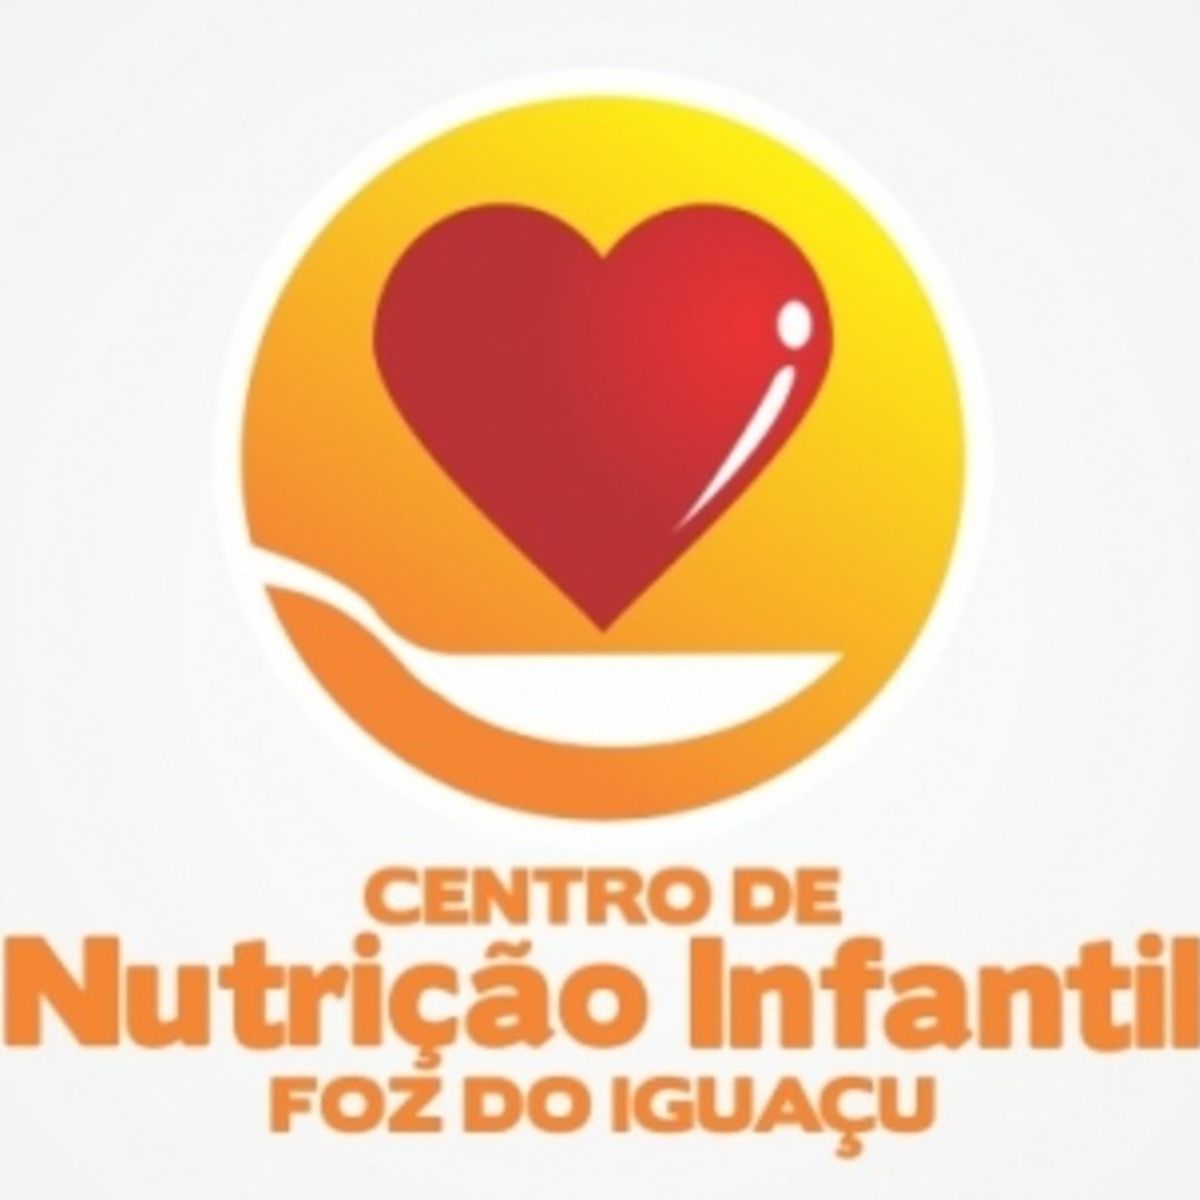 Centro de Nutrição Infantil de Foz do Iguaçu